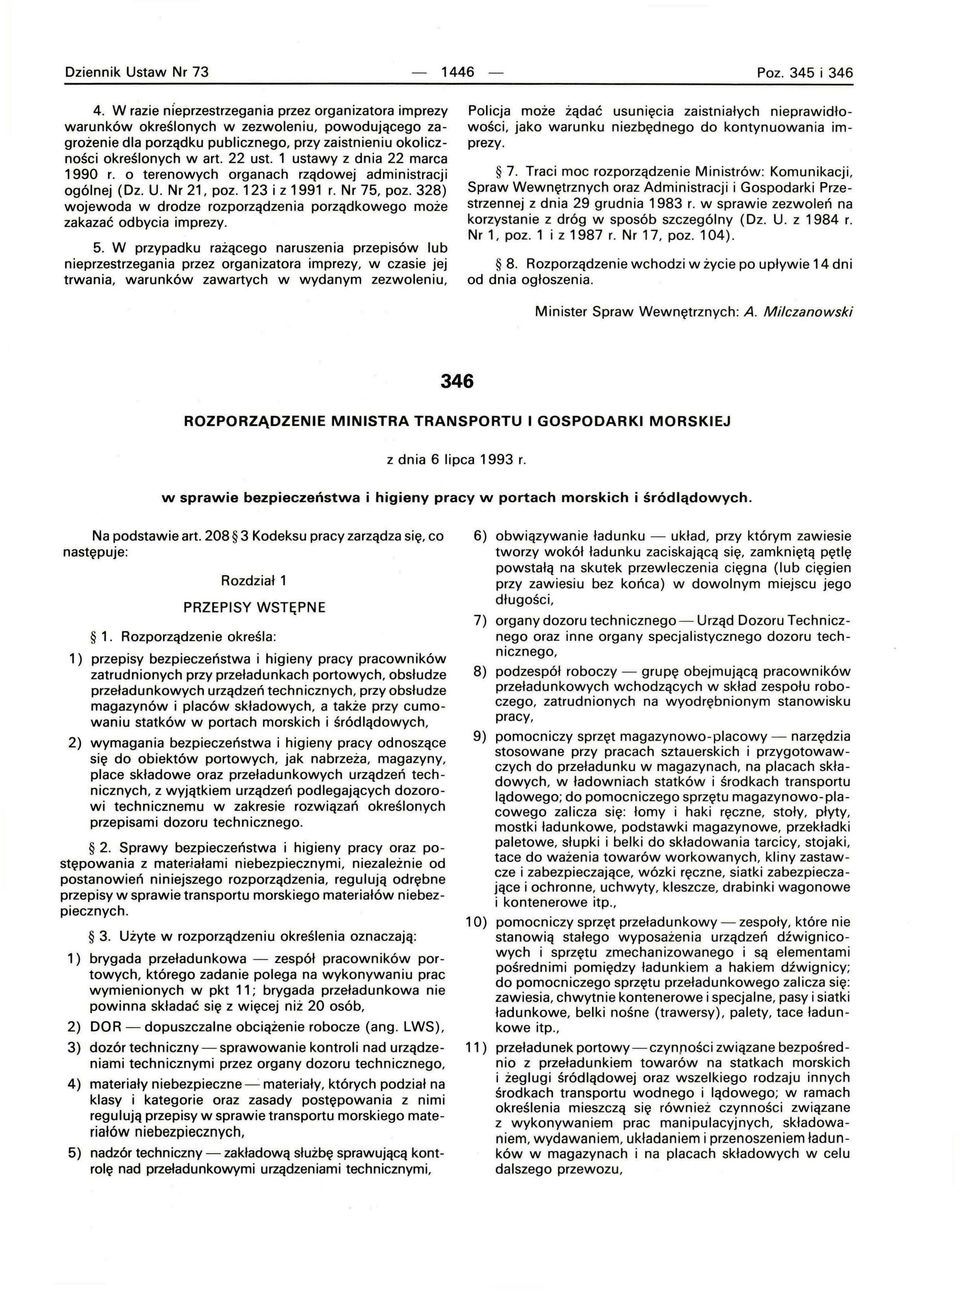 1 ustawy z dnia 22 marca 1990 r. o terenowych organach rządowej administracji ogólnej (Dz. U. Nr 21, poz. 123 i z 1991 r. Nr 75, poz.